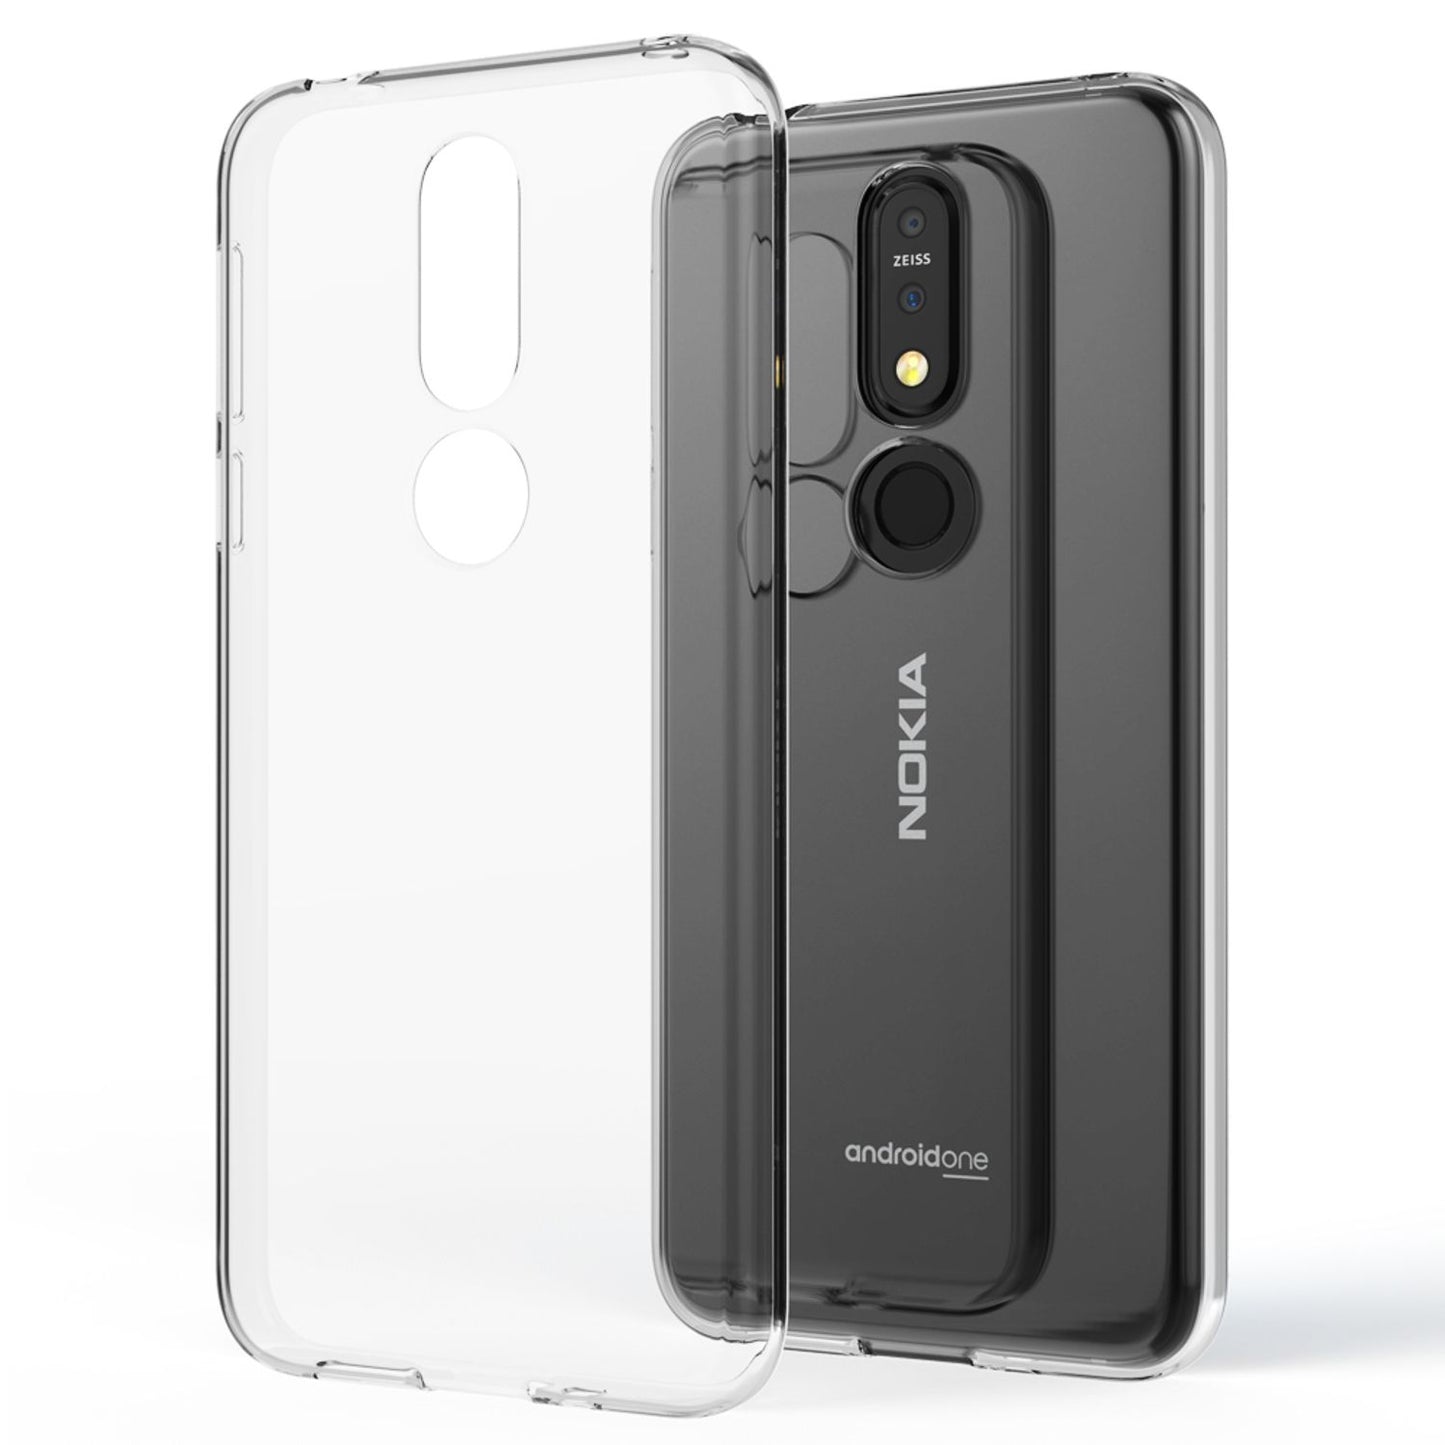 NALIA Hülle für Nokia 7.1 (2018), Soft Handyhülle TPU Silikon Case Cover Clear